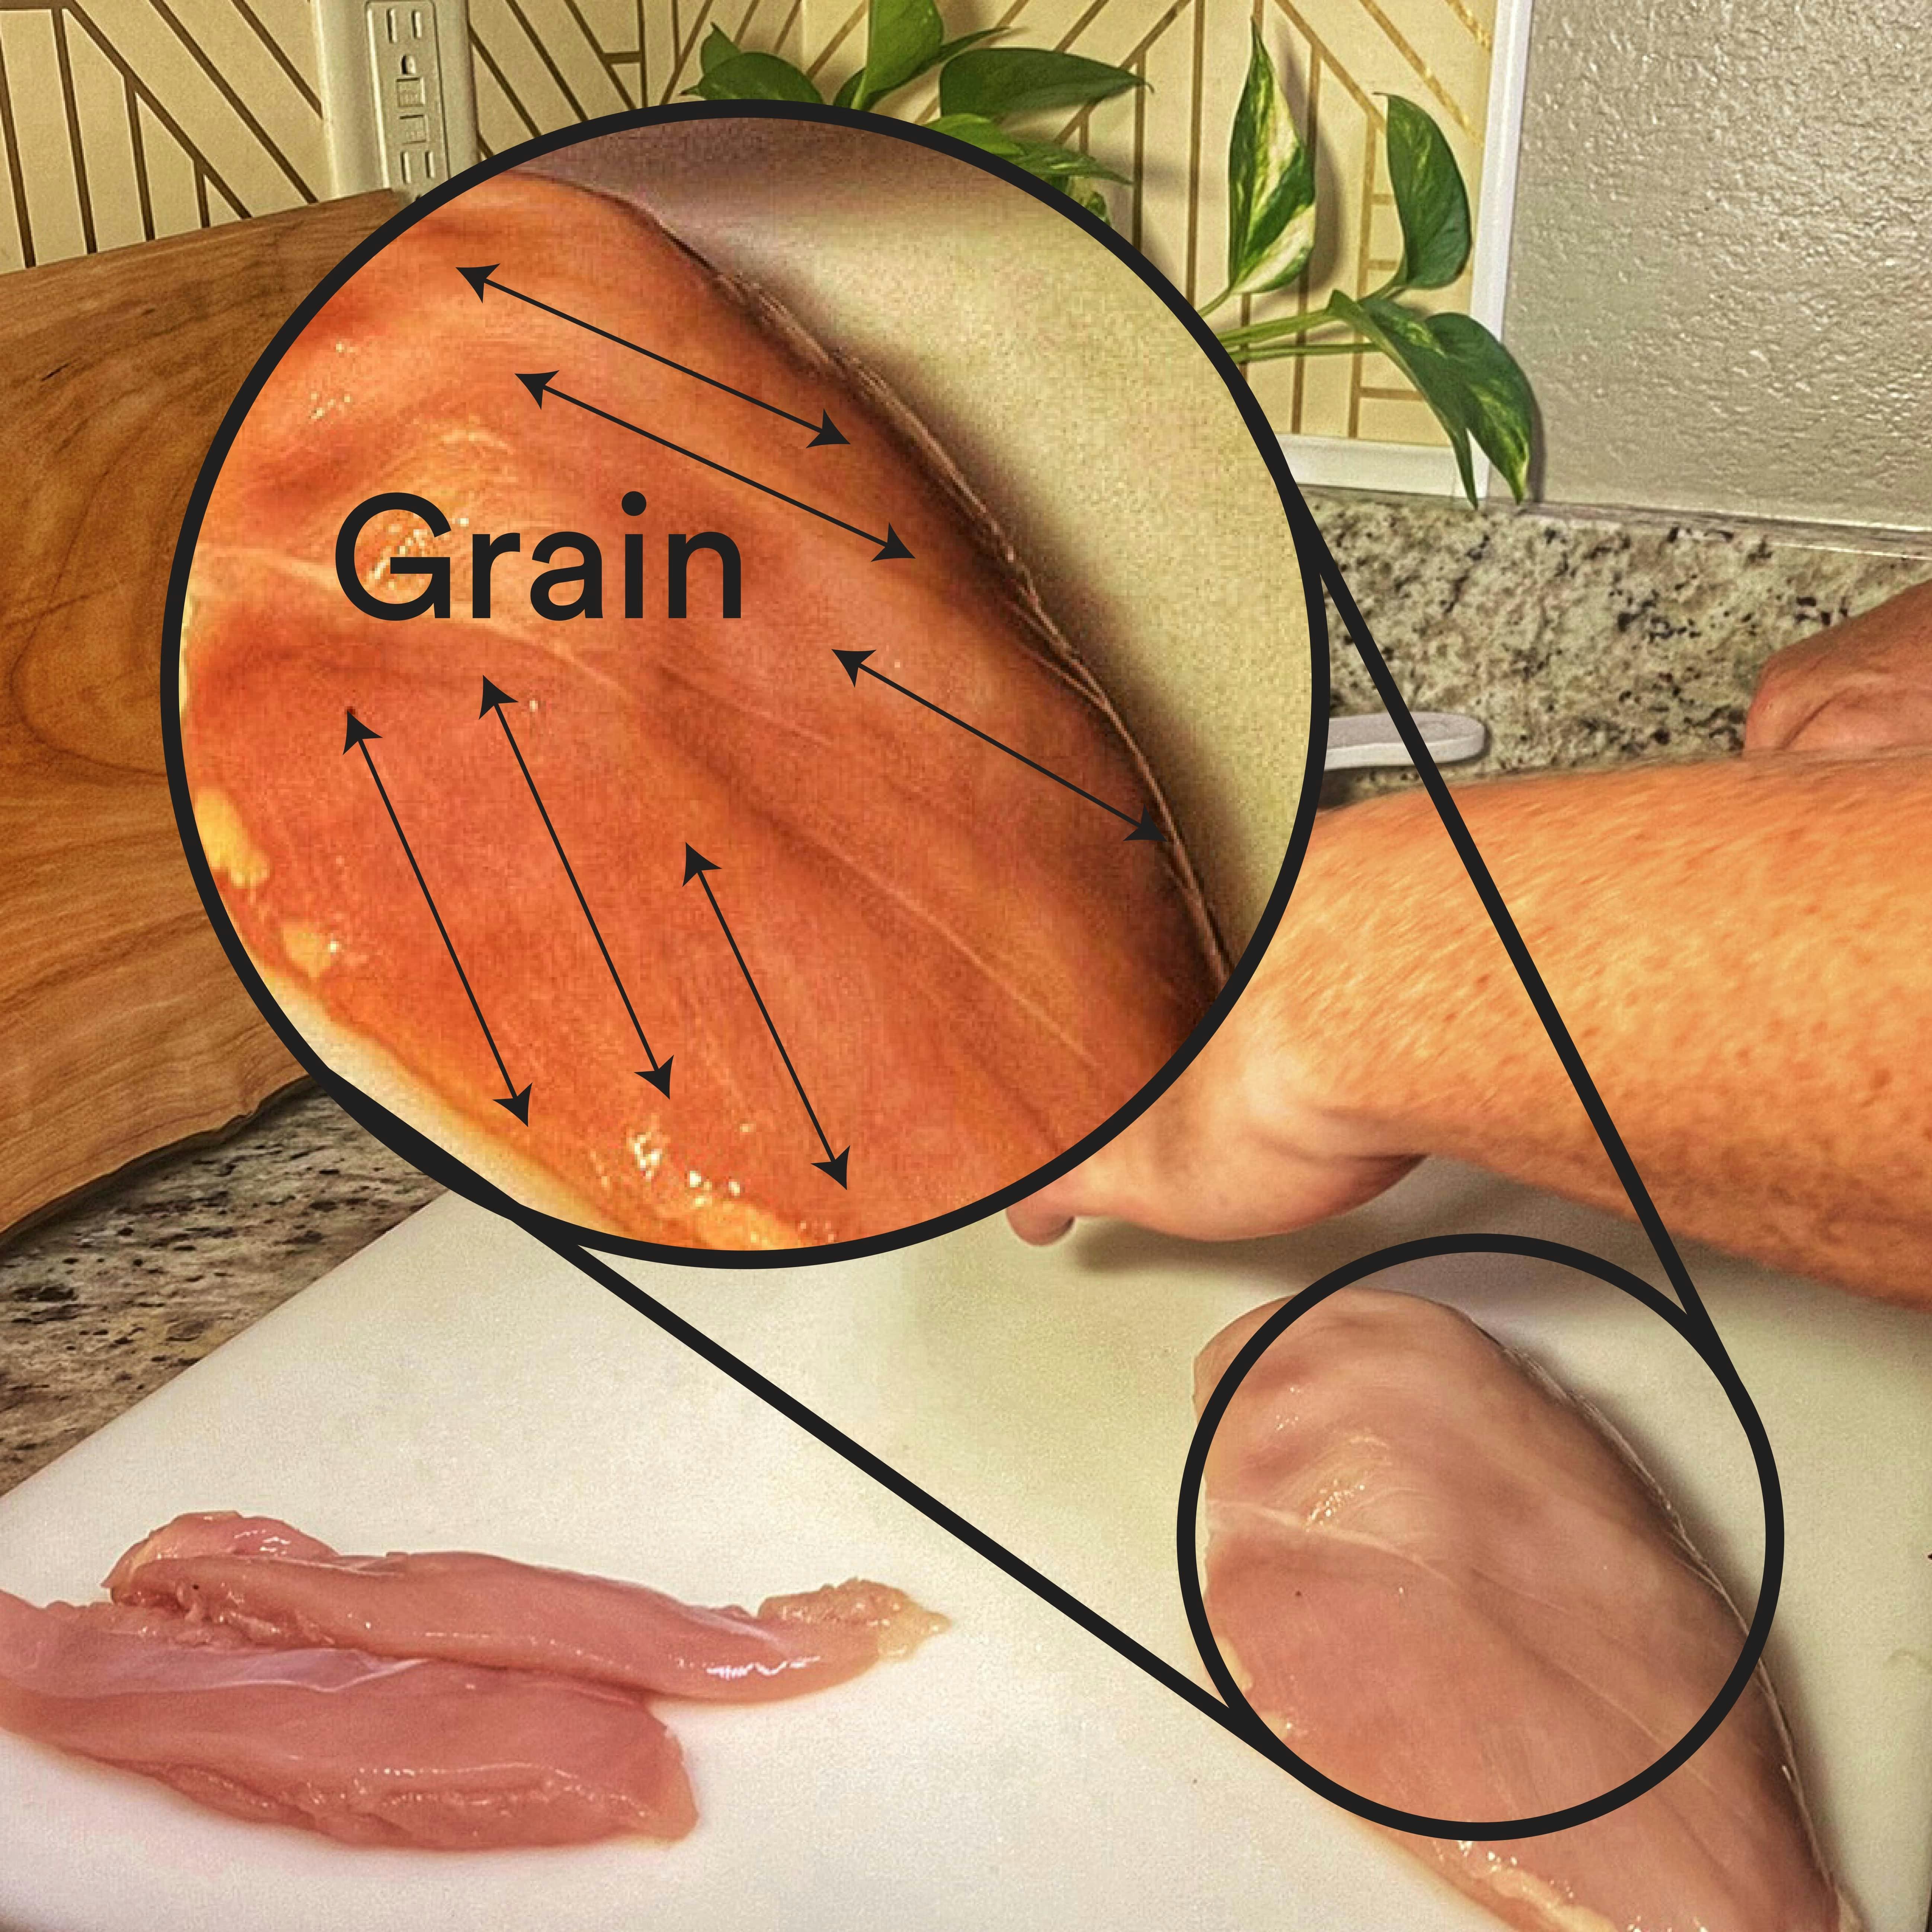 The grain of a chicken breast